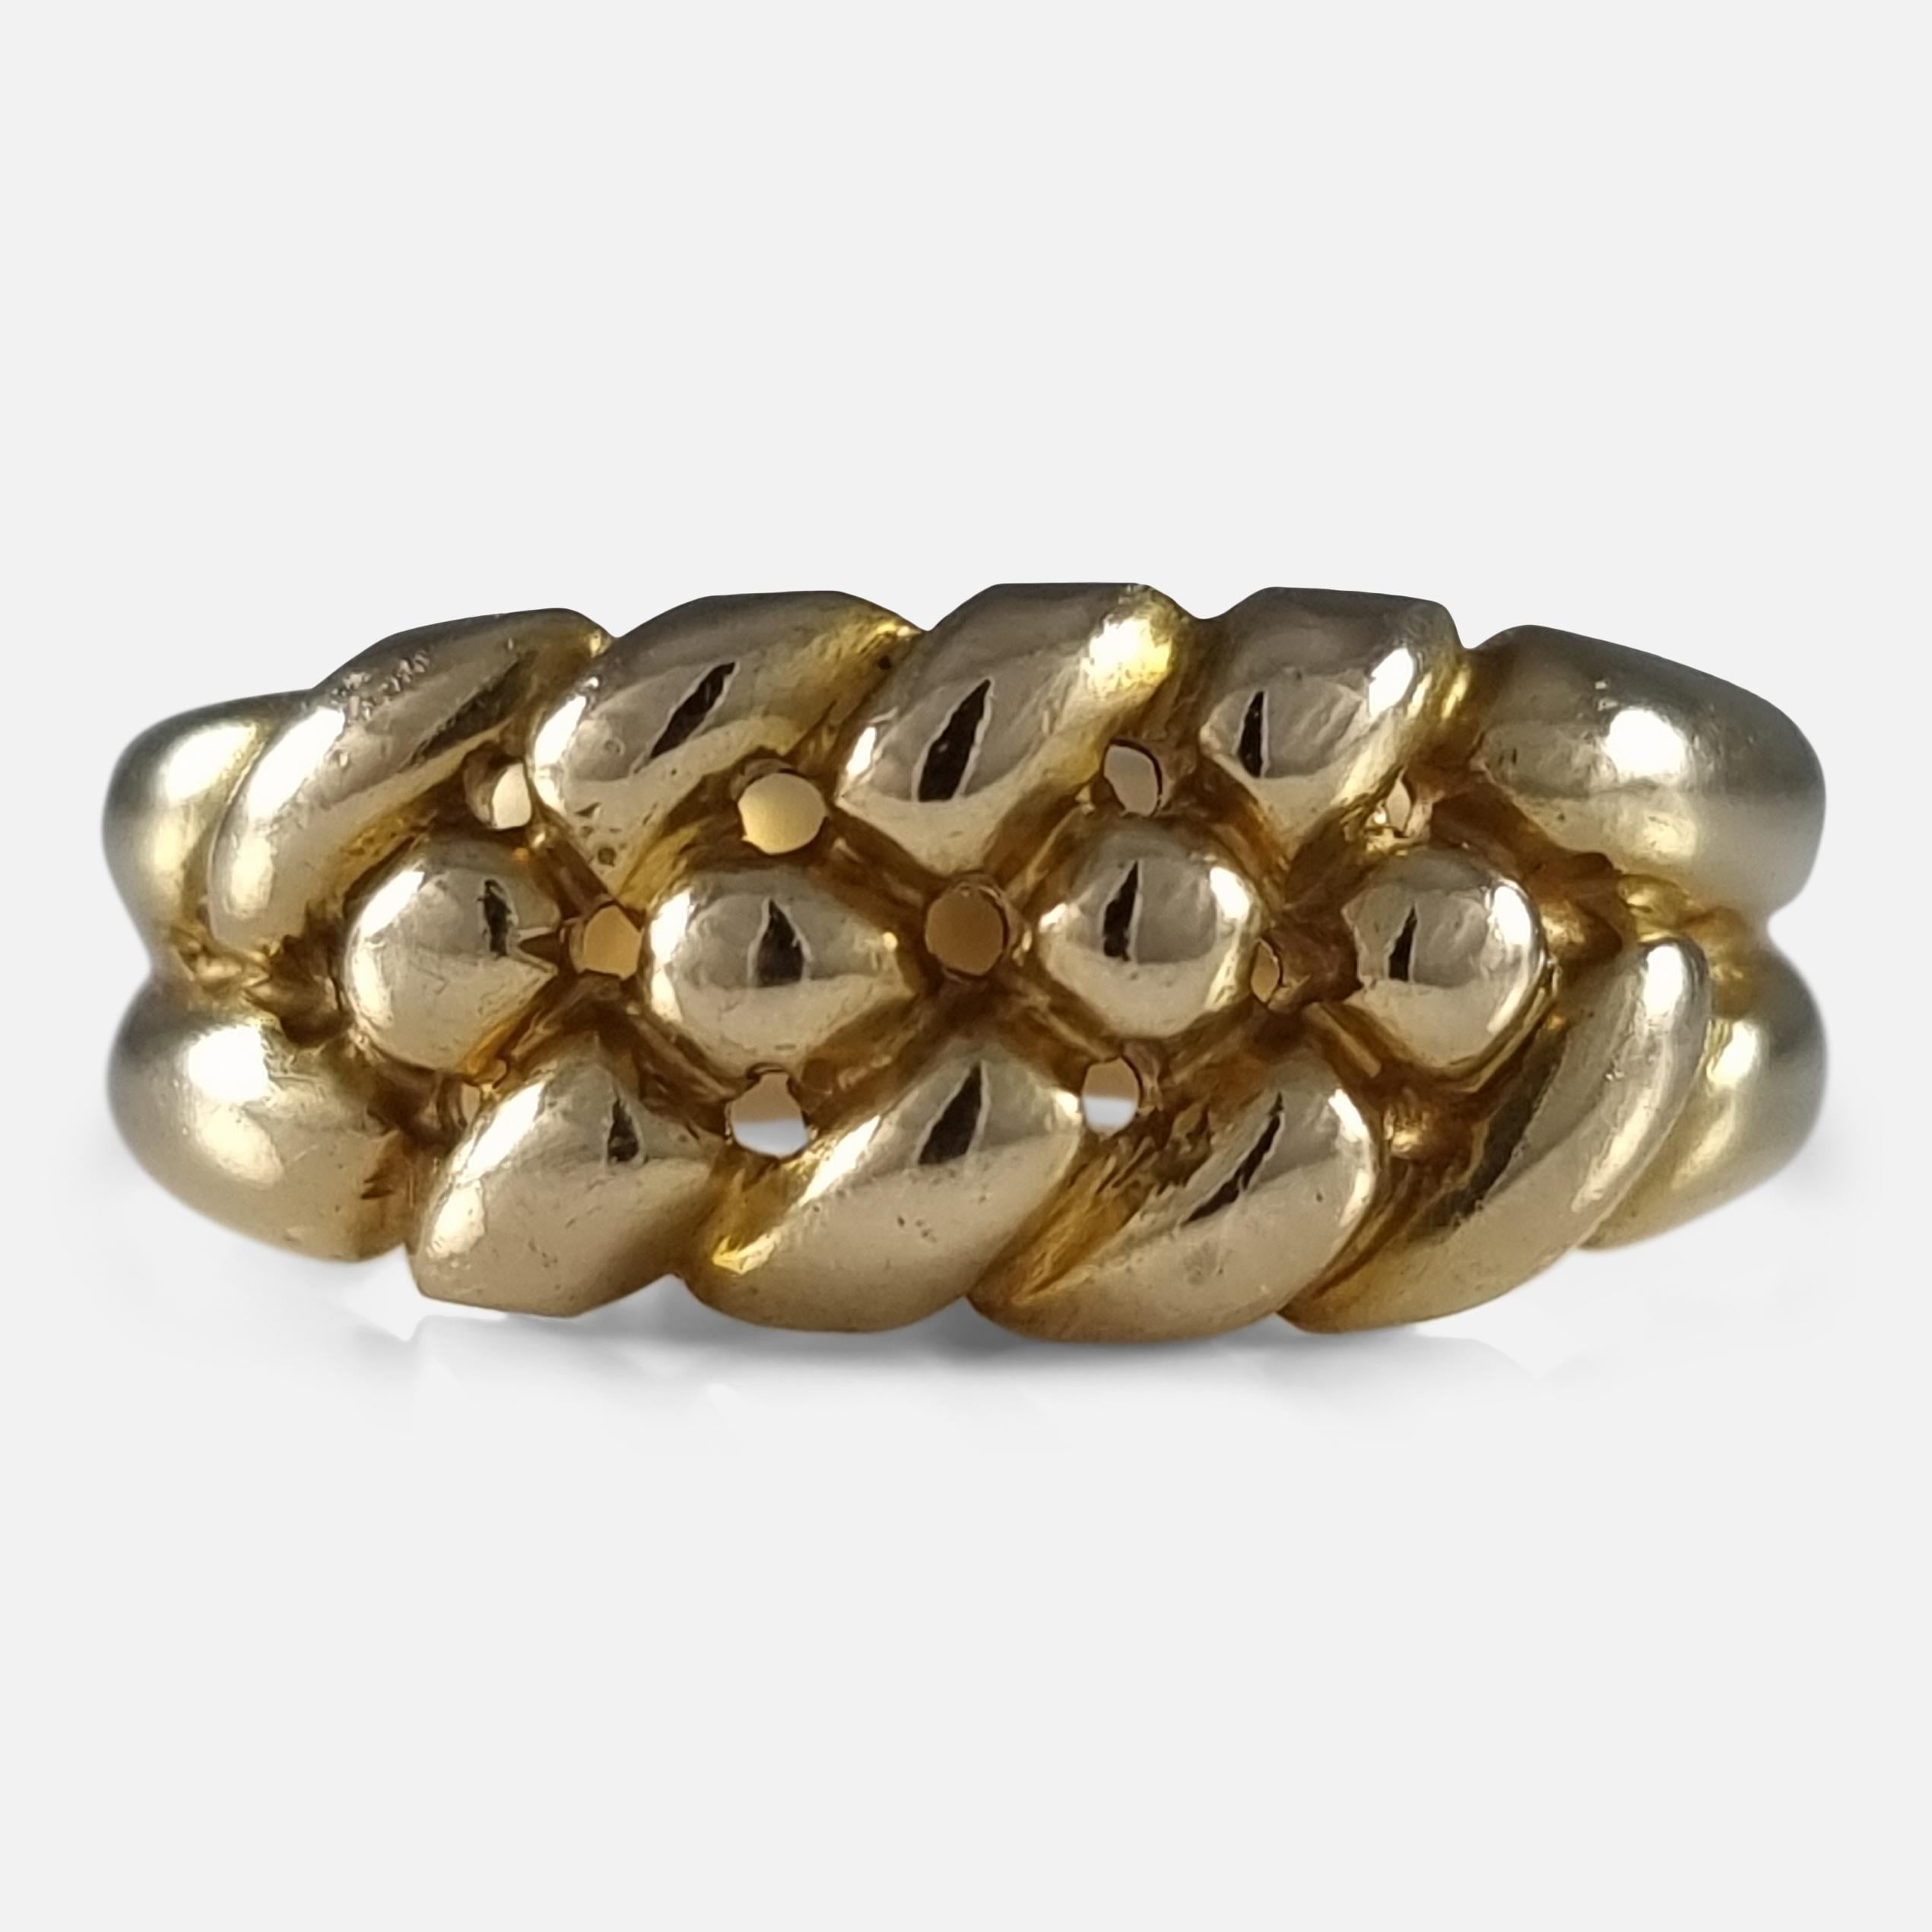 Ein viktorianischer 18 Karat Gelbgold Keeper Ring. Ursprünglich wurden Halteringe am Finger getragen, um zu verhindern, dass ein anderer Ring versehentlich von diesem Finger rutscht.

Der Ring ist mit Birmingham Assay Punzierungen, 